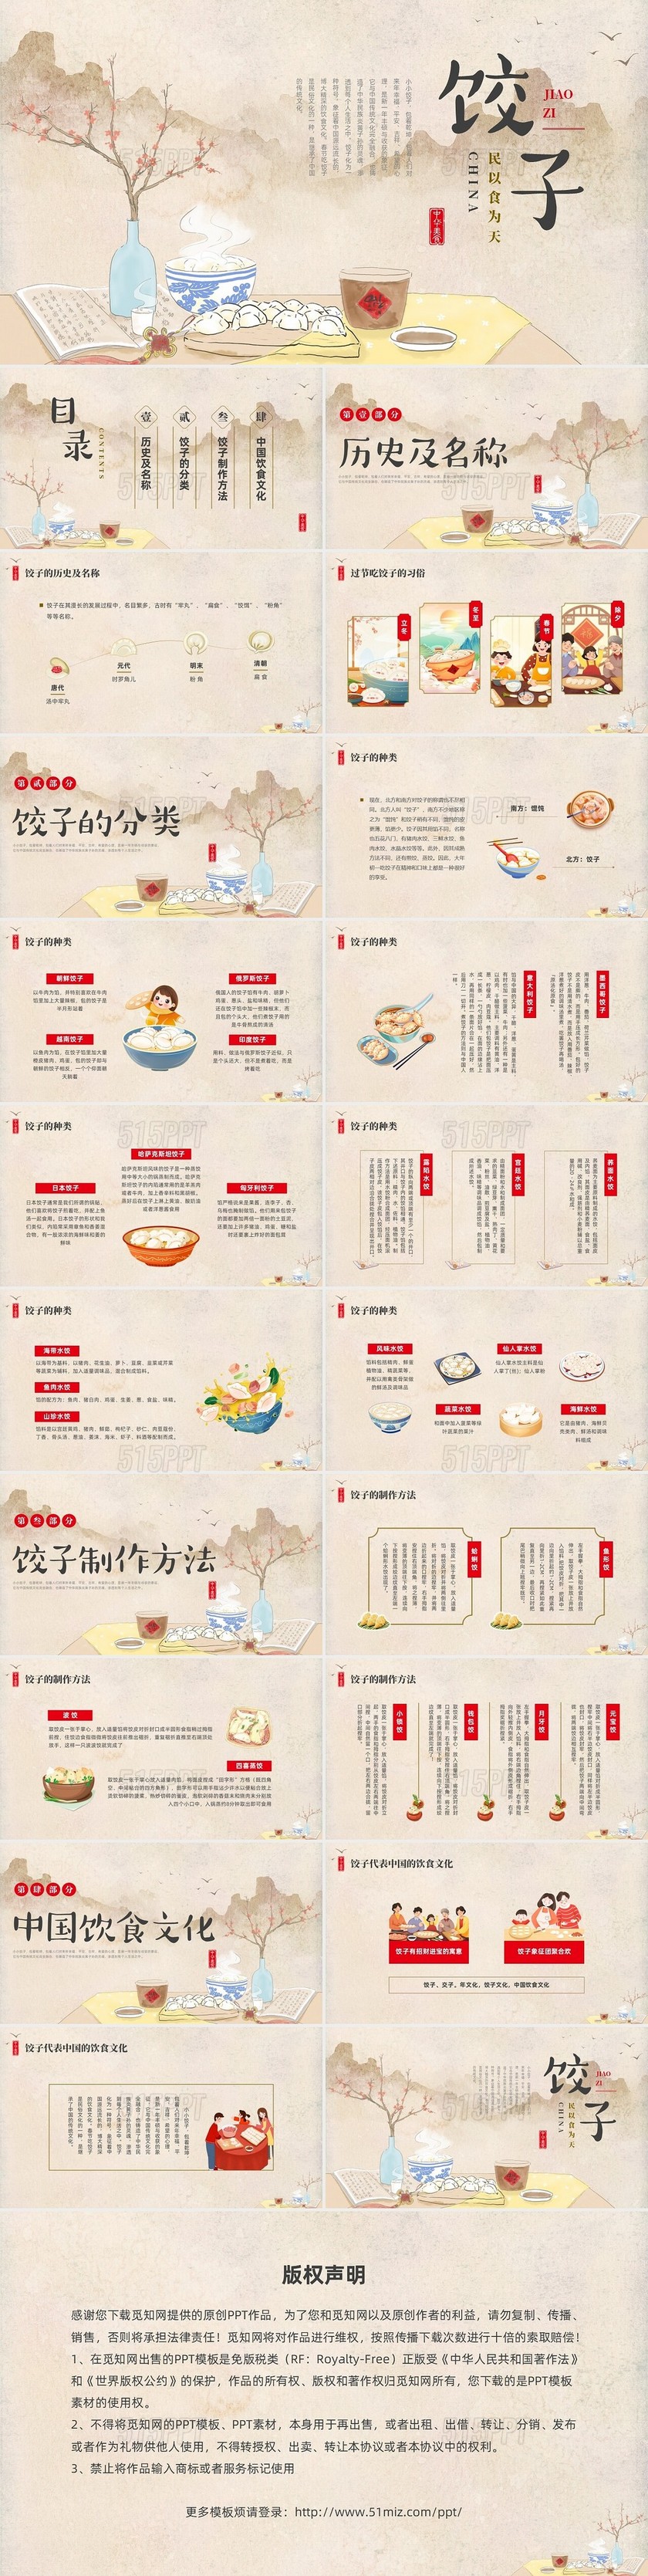 彩色水墨插画饺子文化宣传推广PPT课件中国传统文化